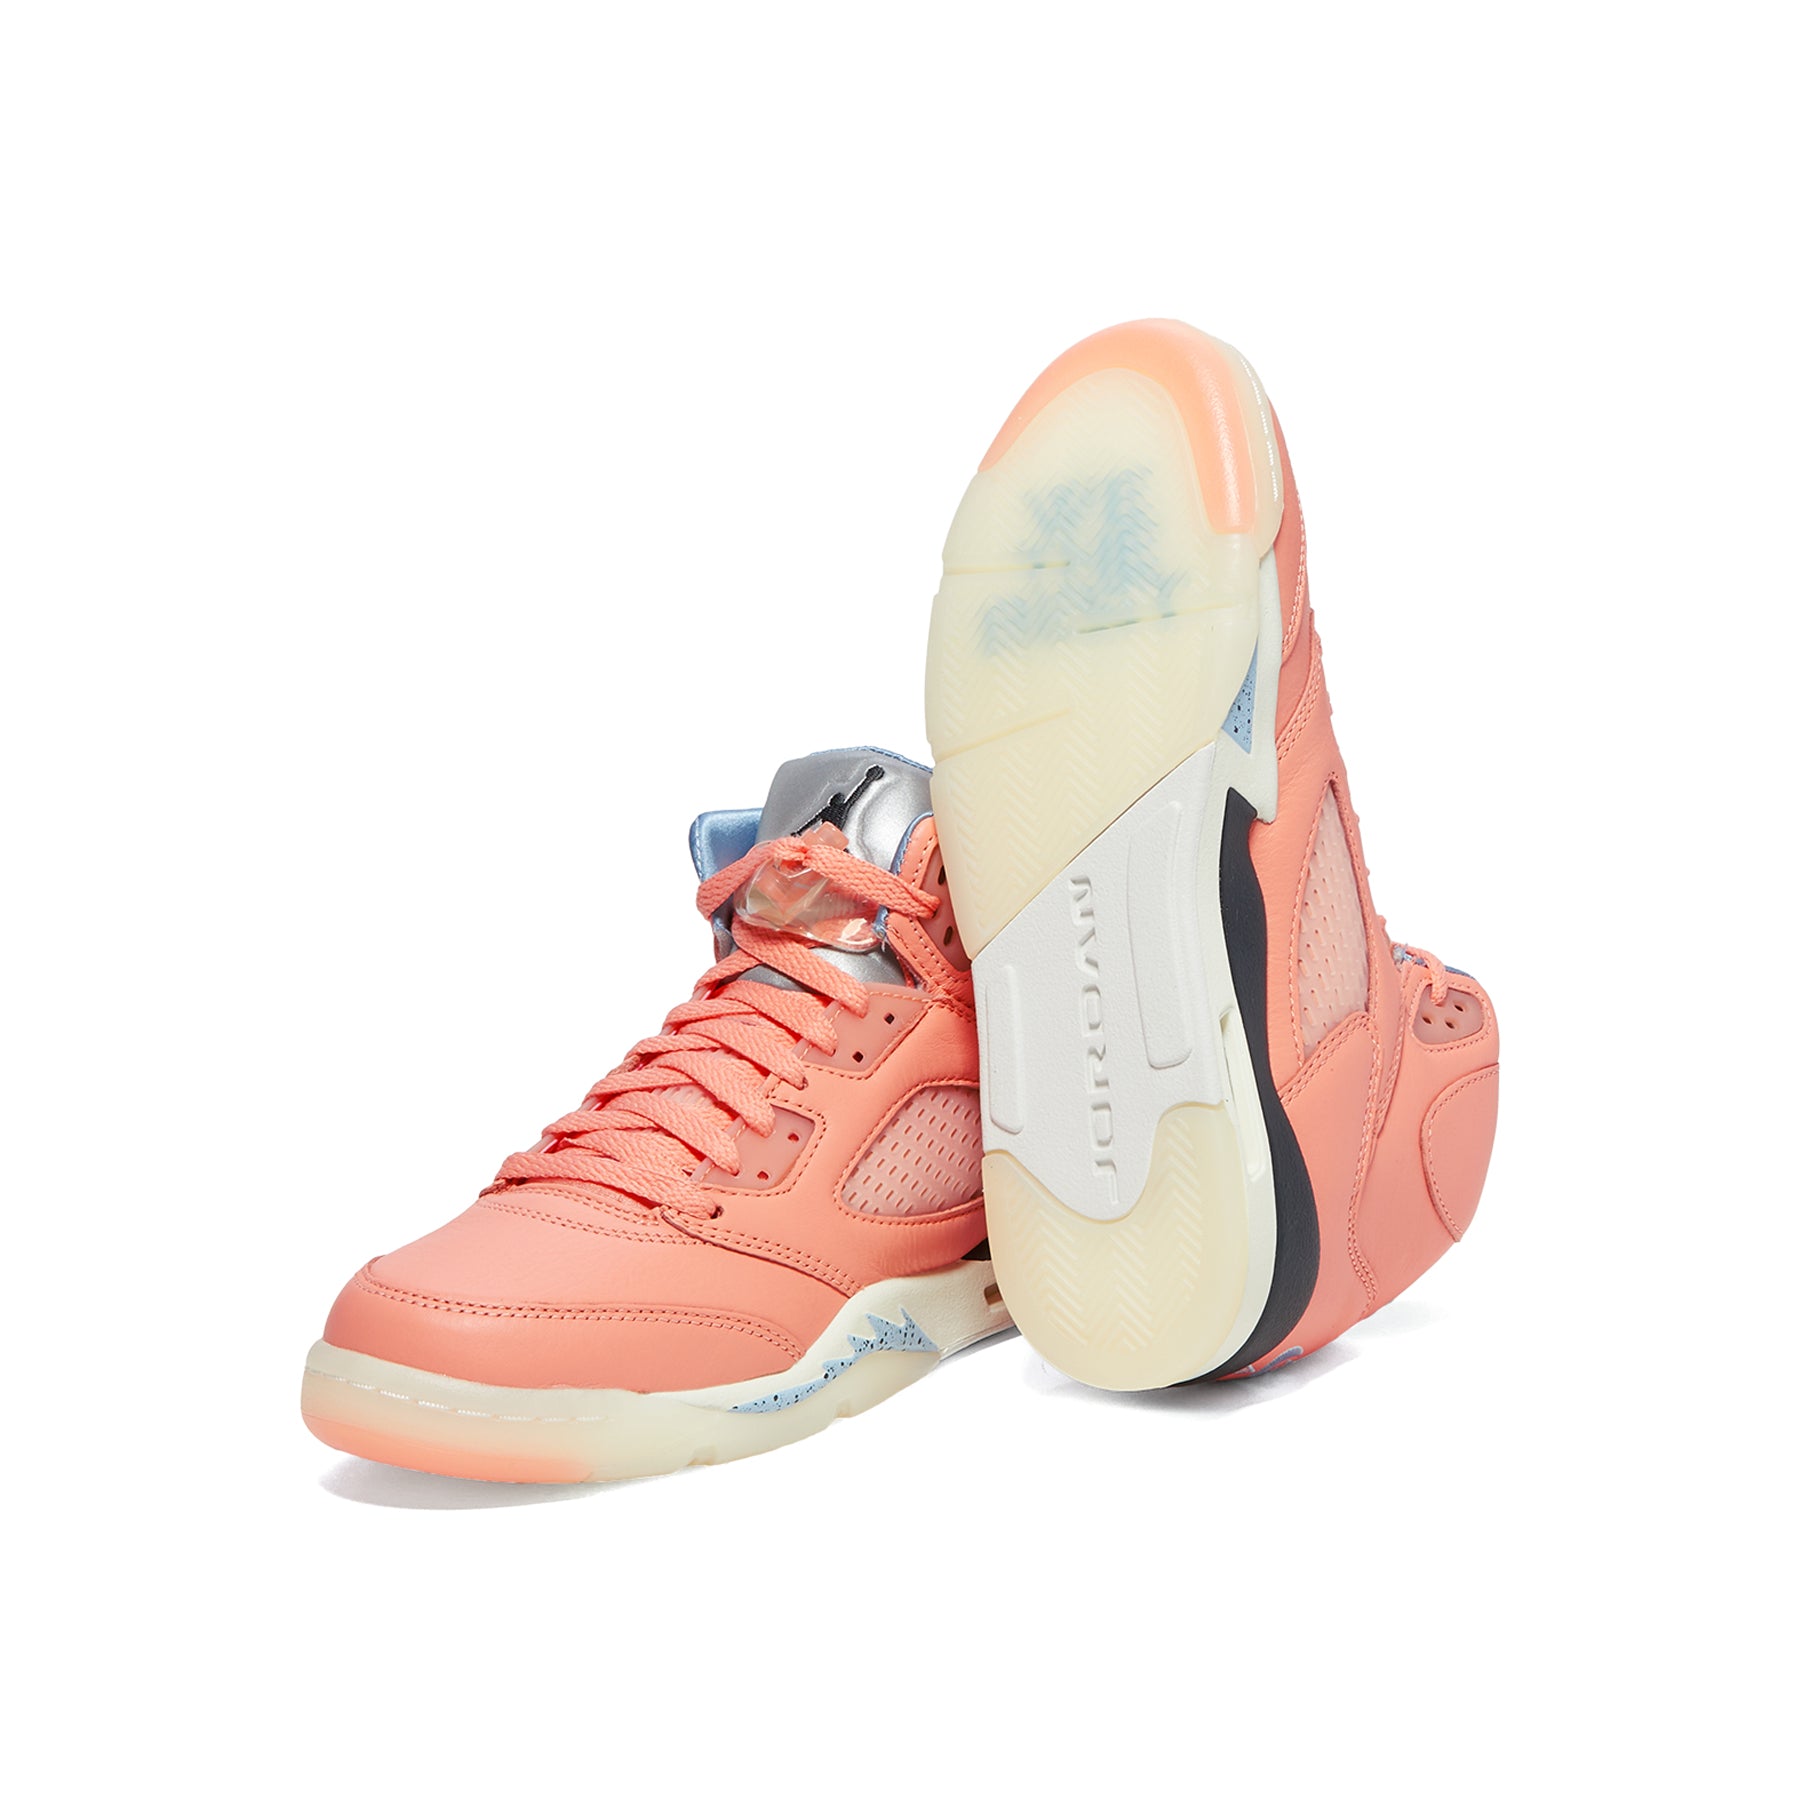 Air Jordan 5 x DJ Khaled 'Crimson Bliss' (DV4982-641). Nike SNKRS LU